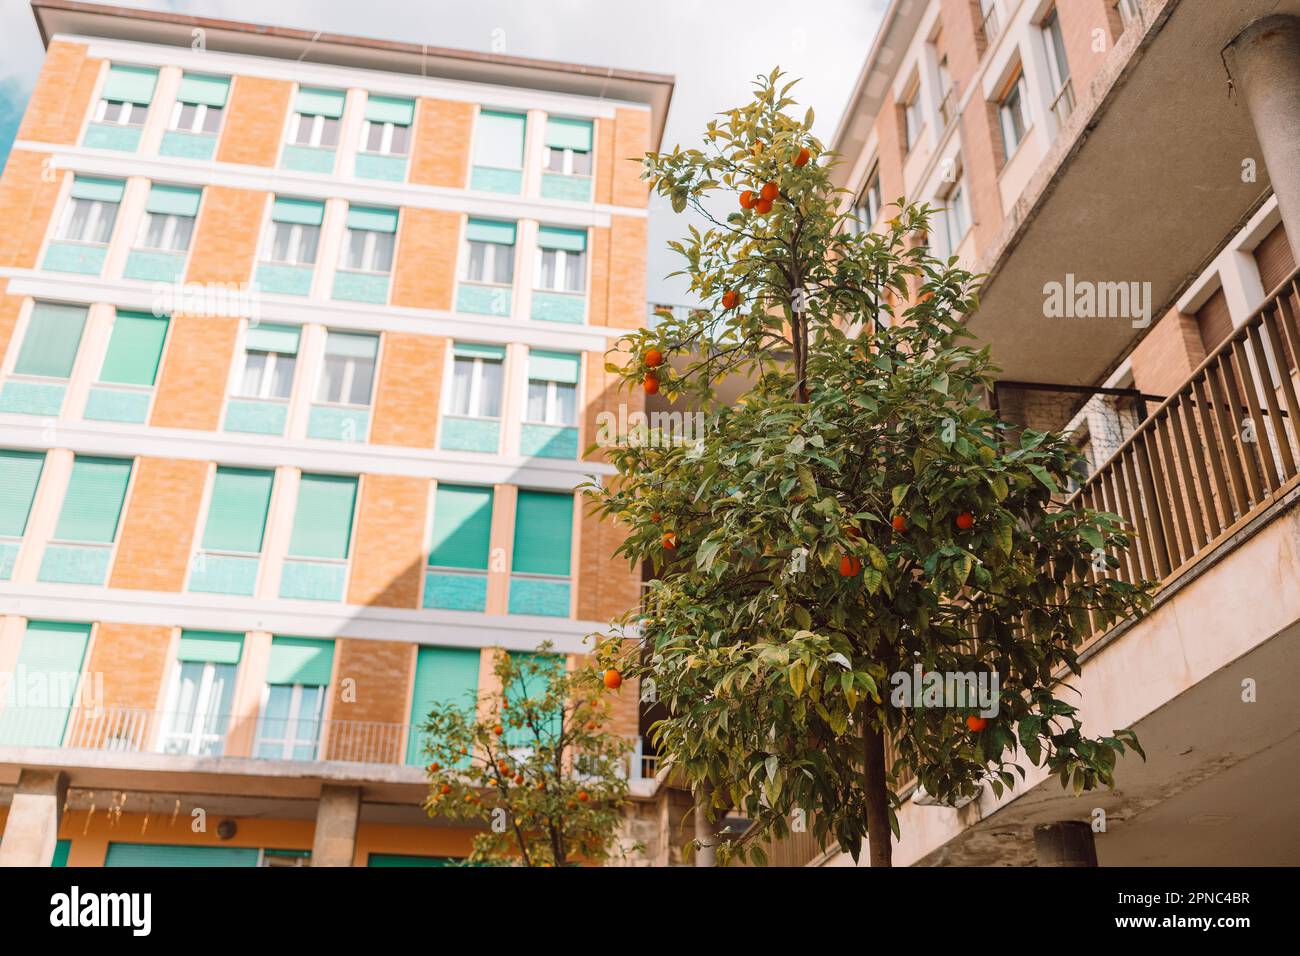 Aranciato nel centro storico di Pisa. Accogliente strada vecchia d'Italia. Le arance crescono su un albero all'esterno. Foto di alta qualità Foto Stock